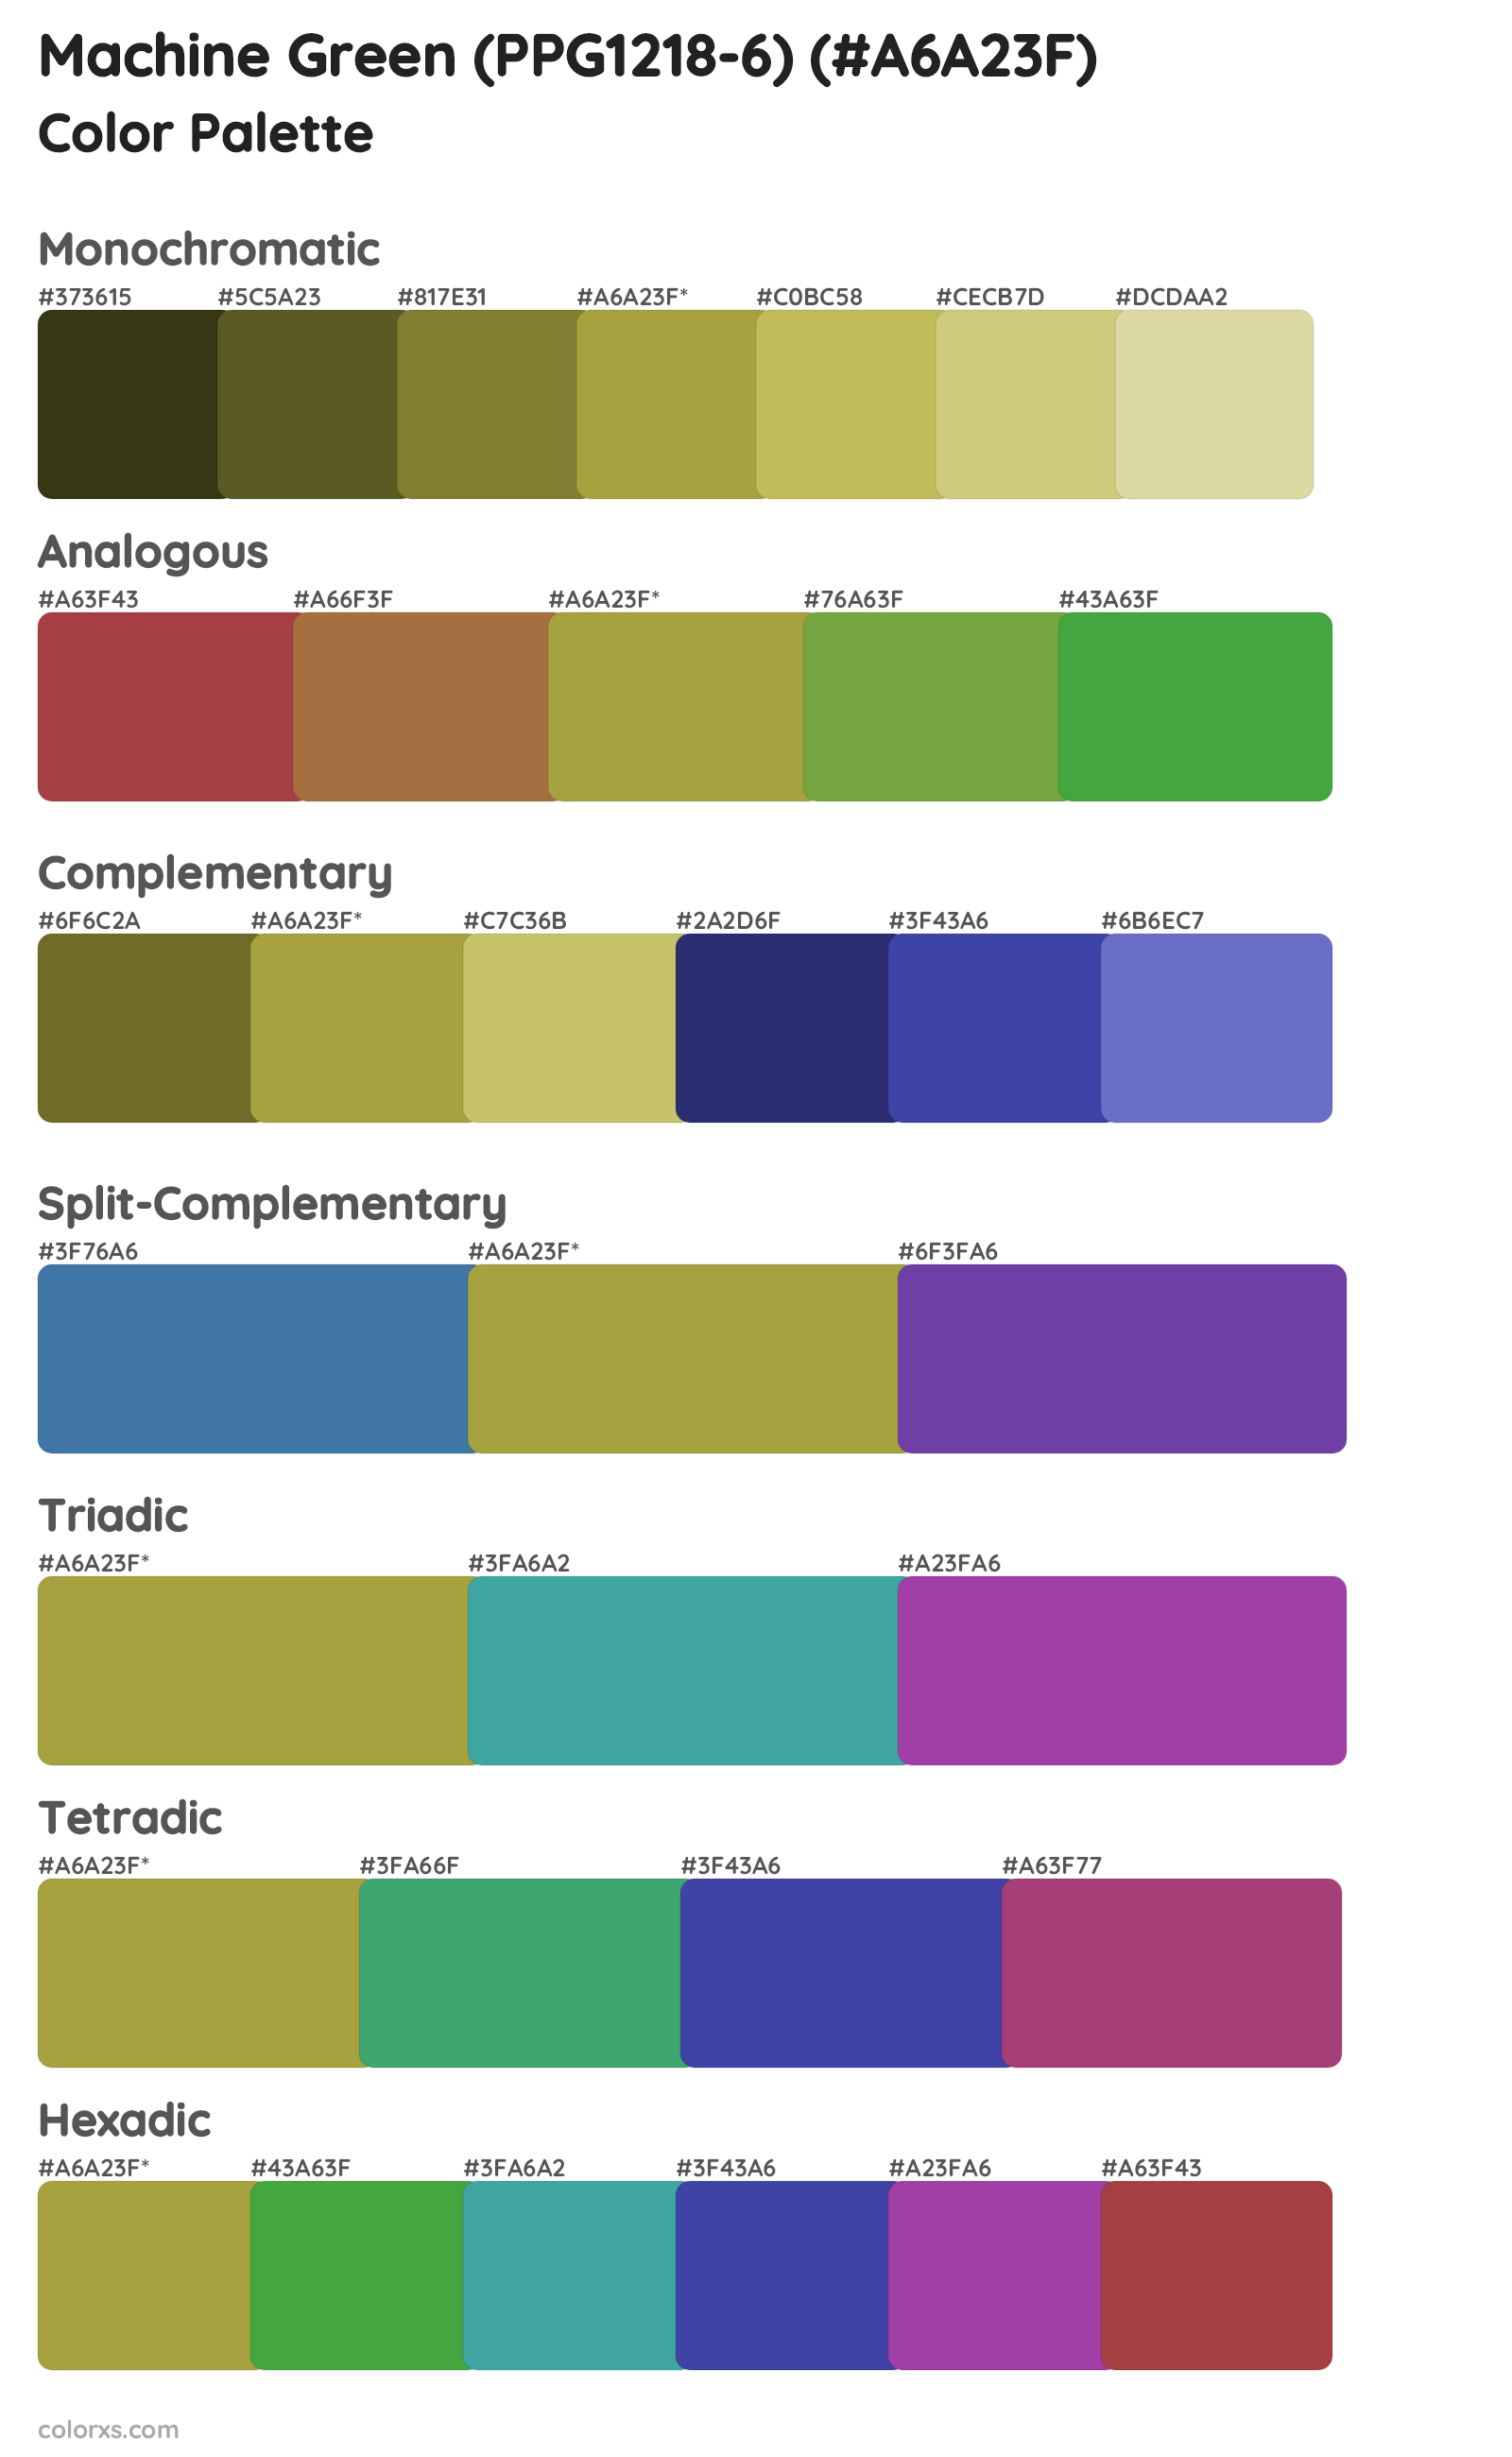 Machine Green (PPG1218-6) Color Scheme Palettes